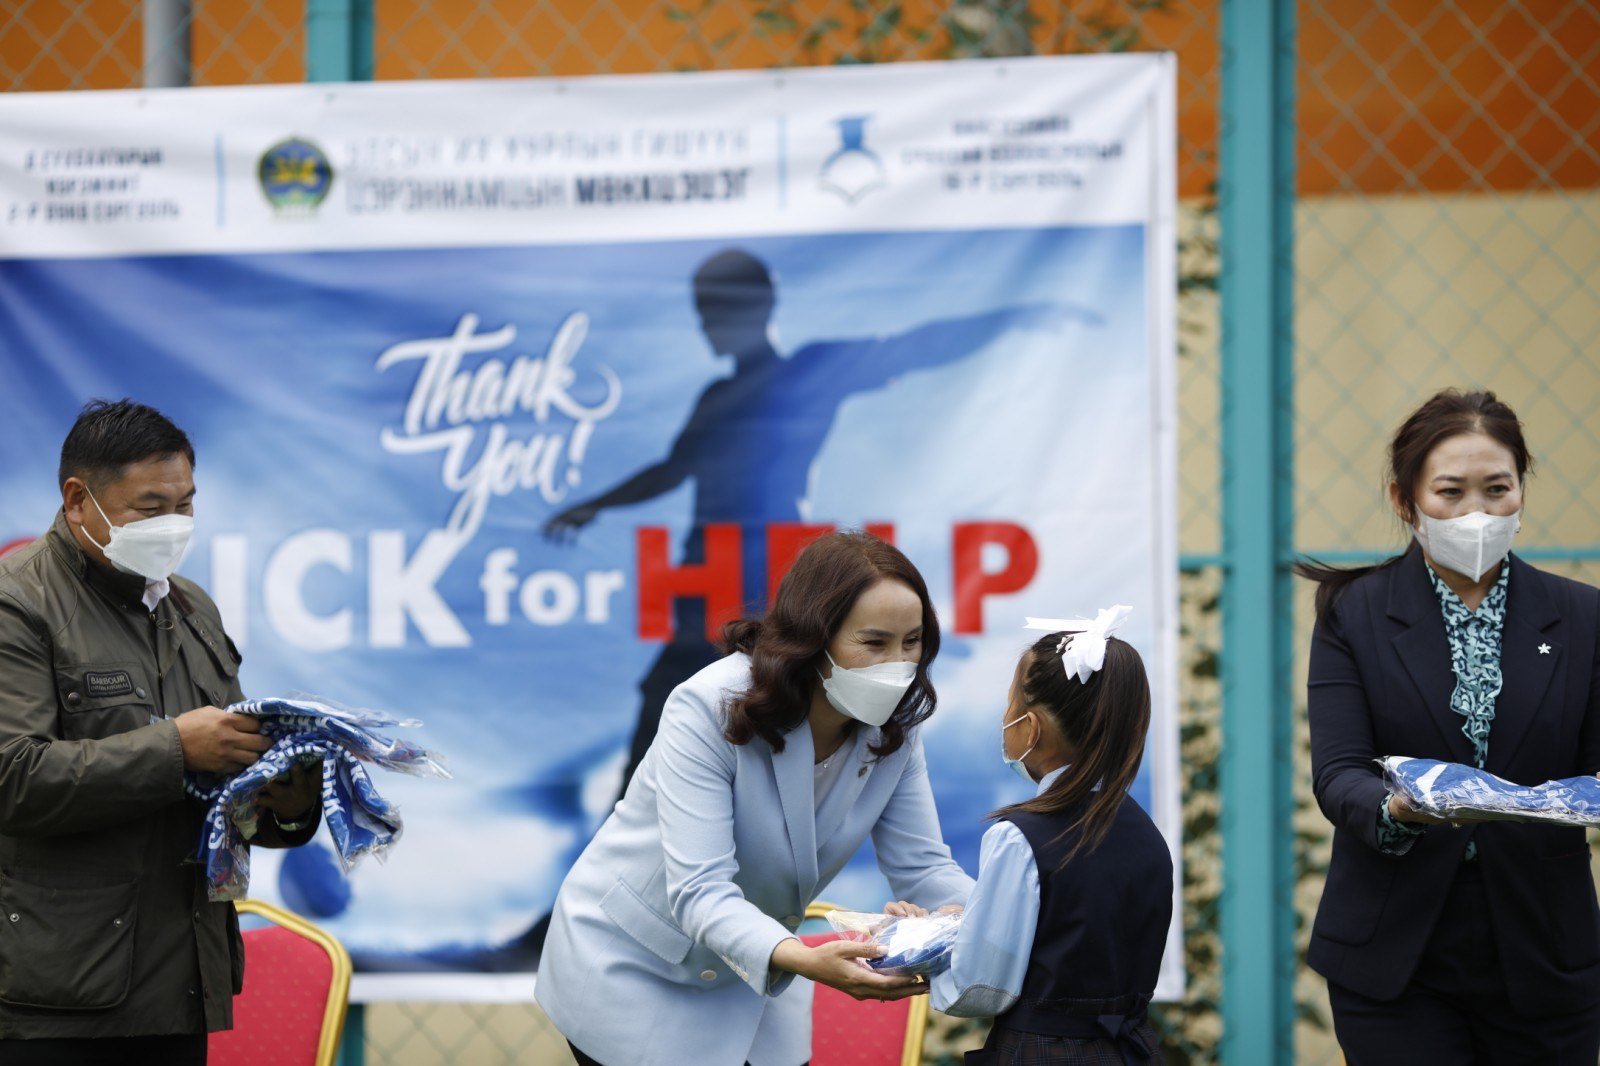 УИХ-ын гишүүн Ц.Мөнхцэцэгийн санаачилгаар ХБНГУ-ын “Kick for help” төсөл Монголд хэрэгжиж эхэллээ